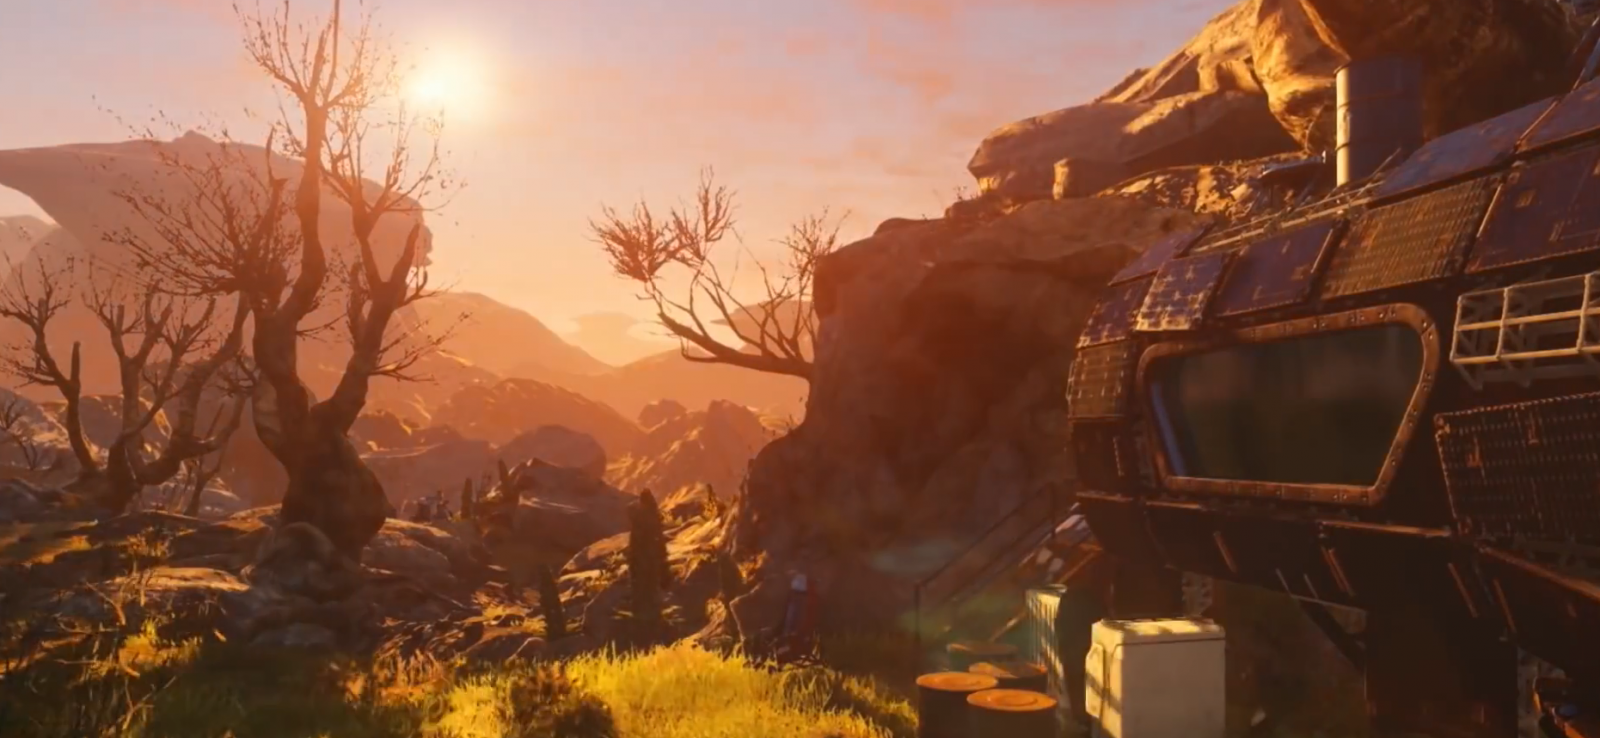 Nieuwe BioWare game zal op de E3 aangekondigd worden